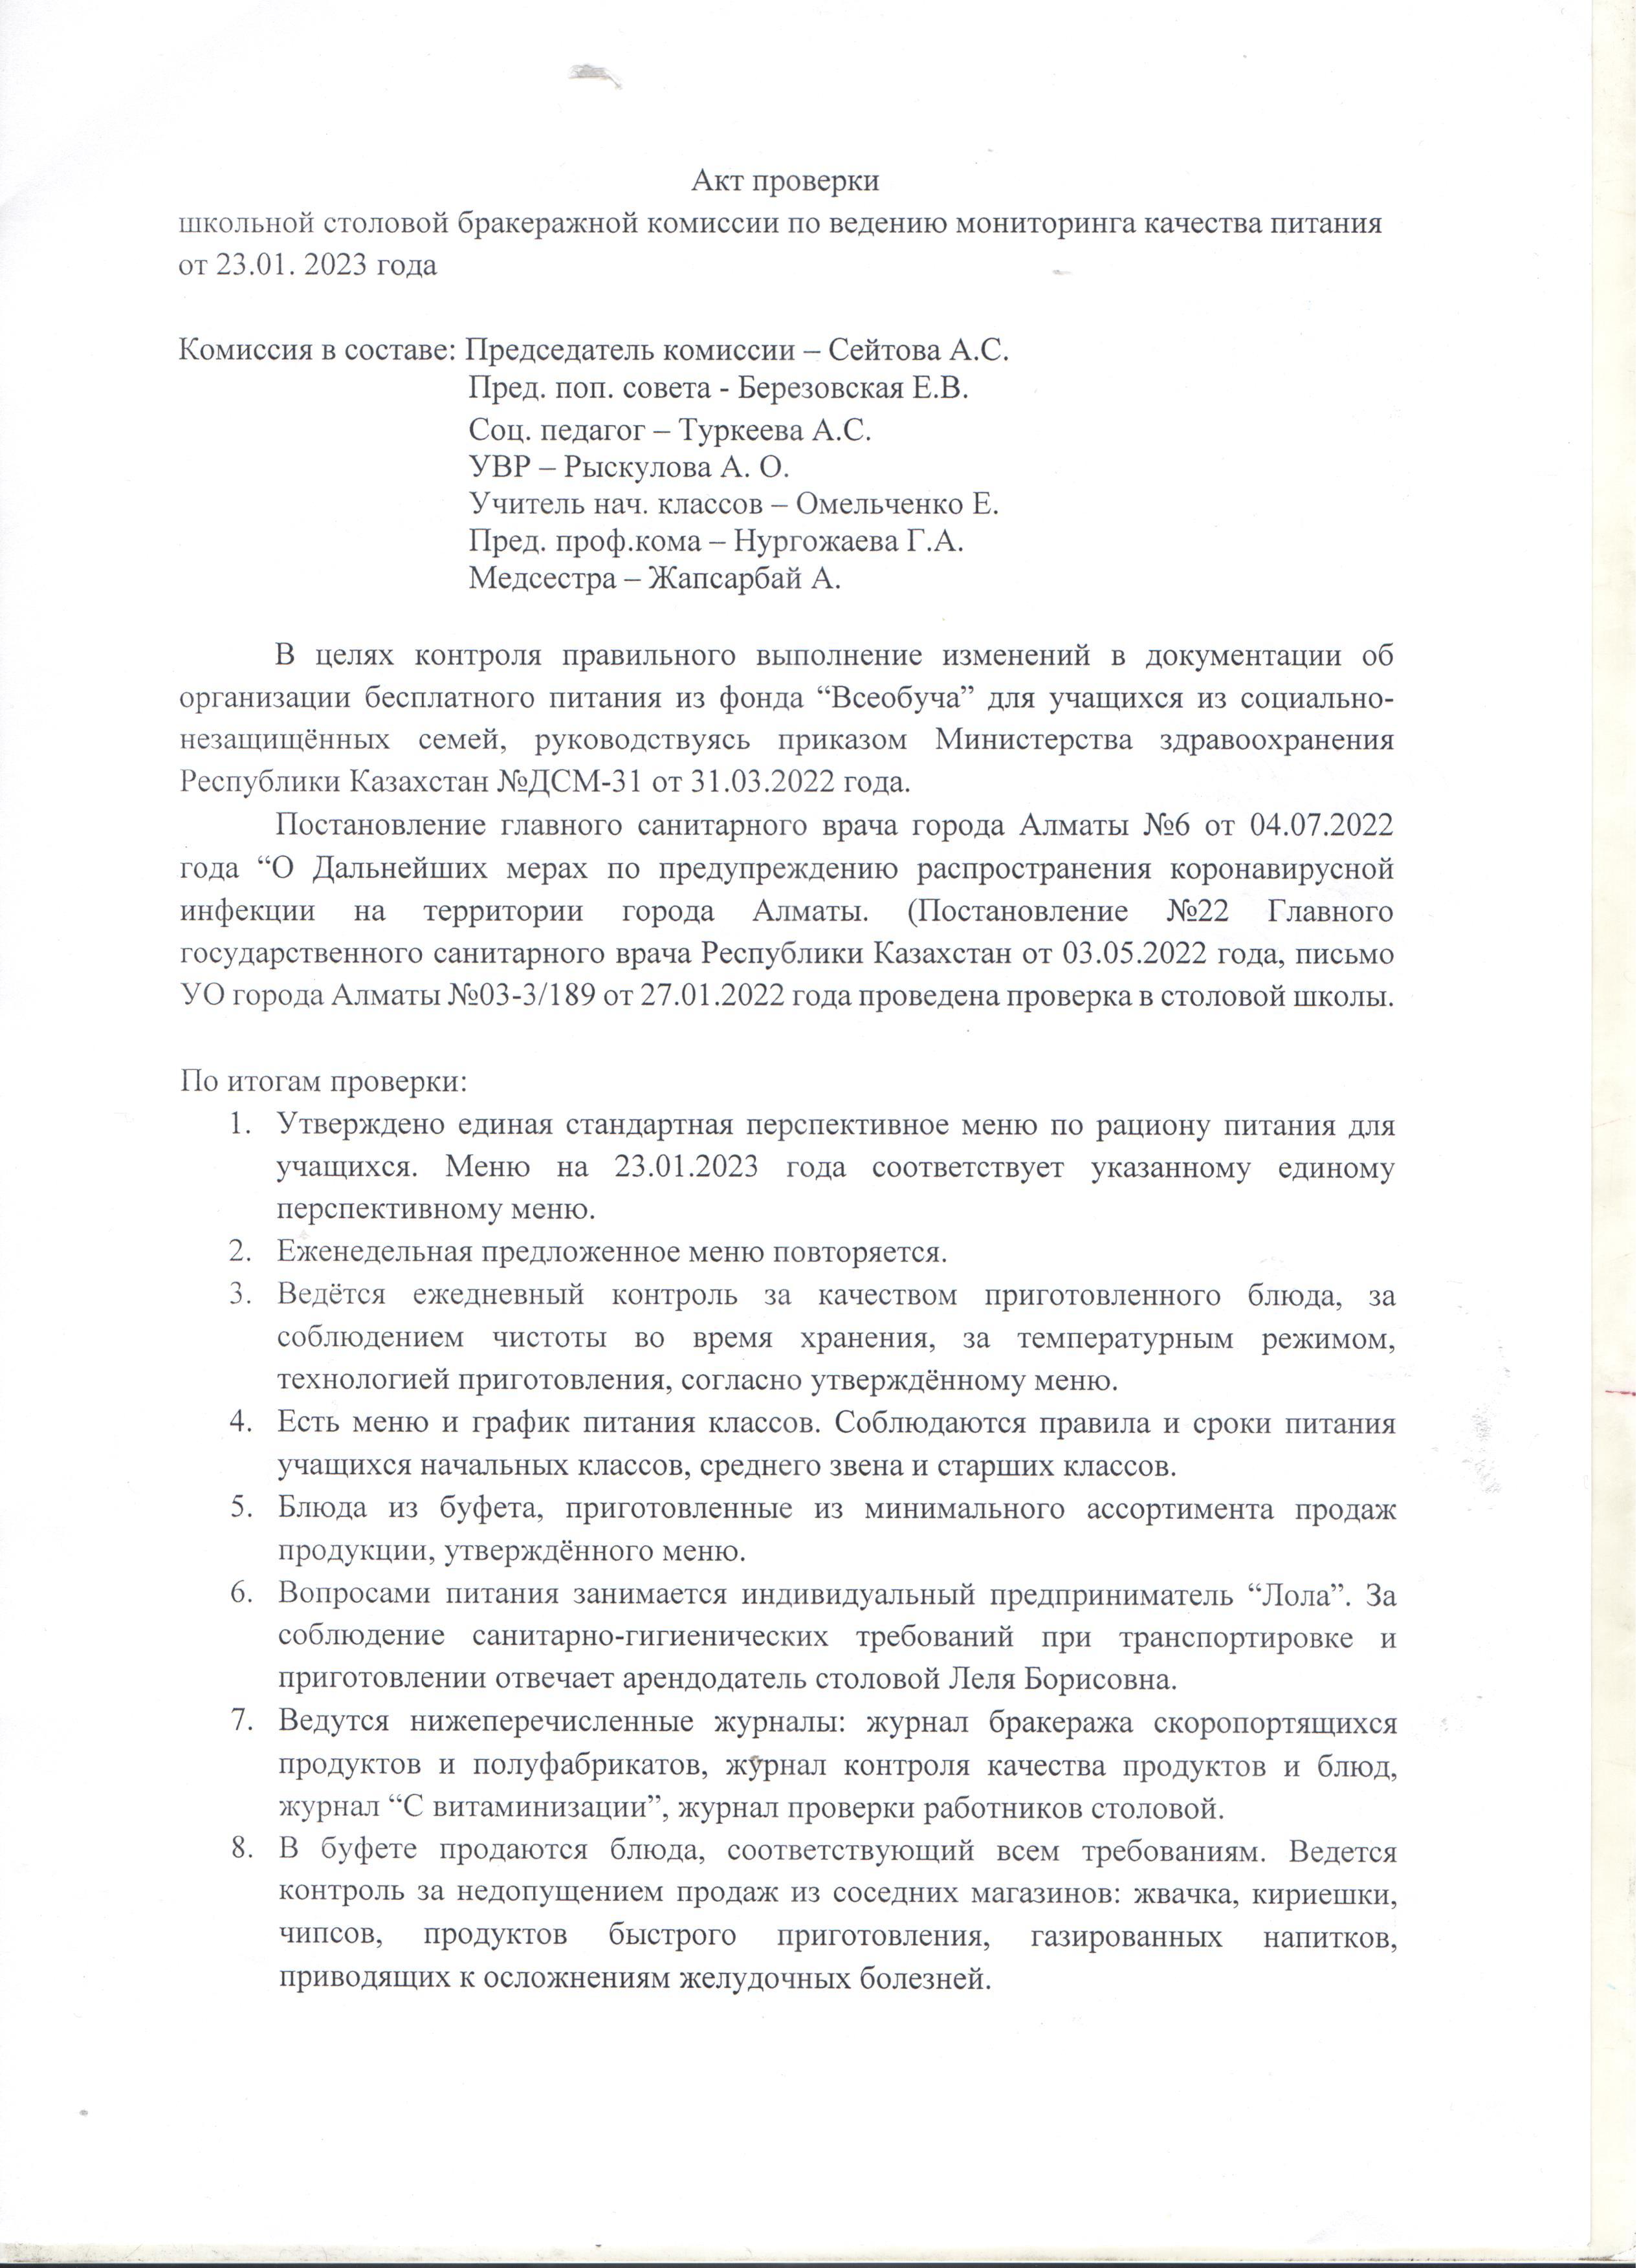 Акт проверки школьной столовой бракеражной комиссий от 23.01.2023